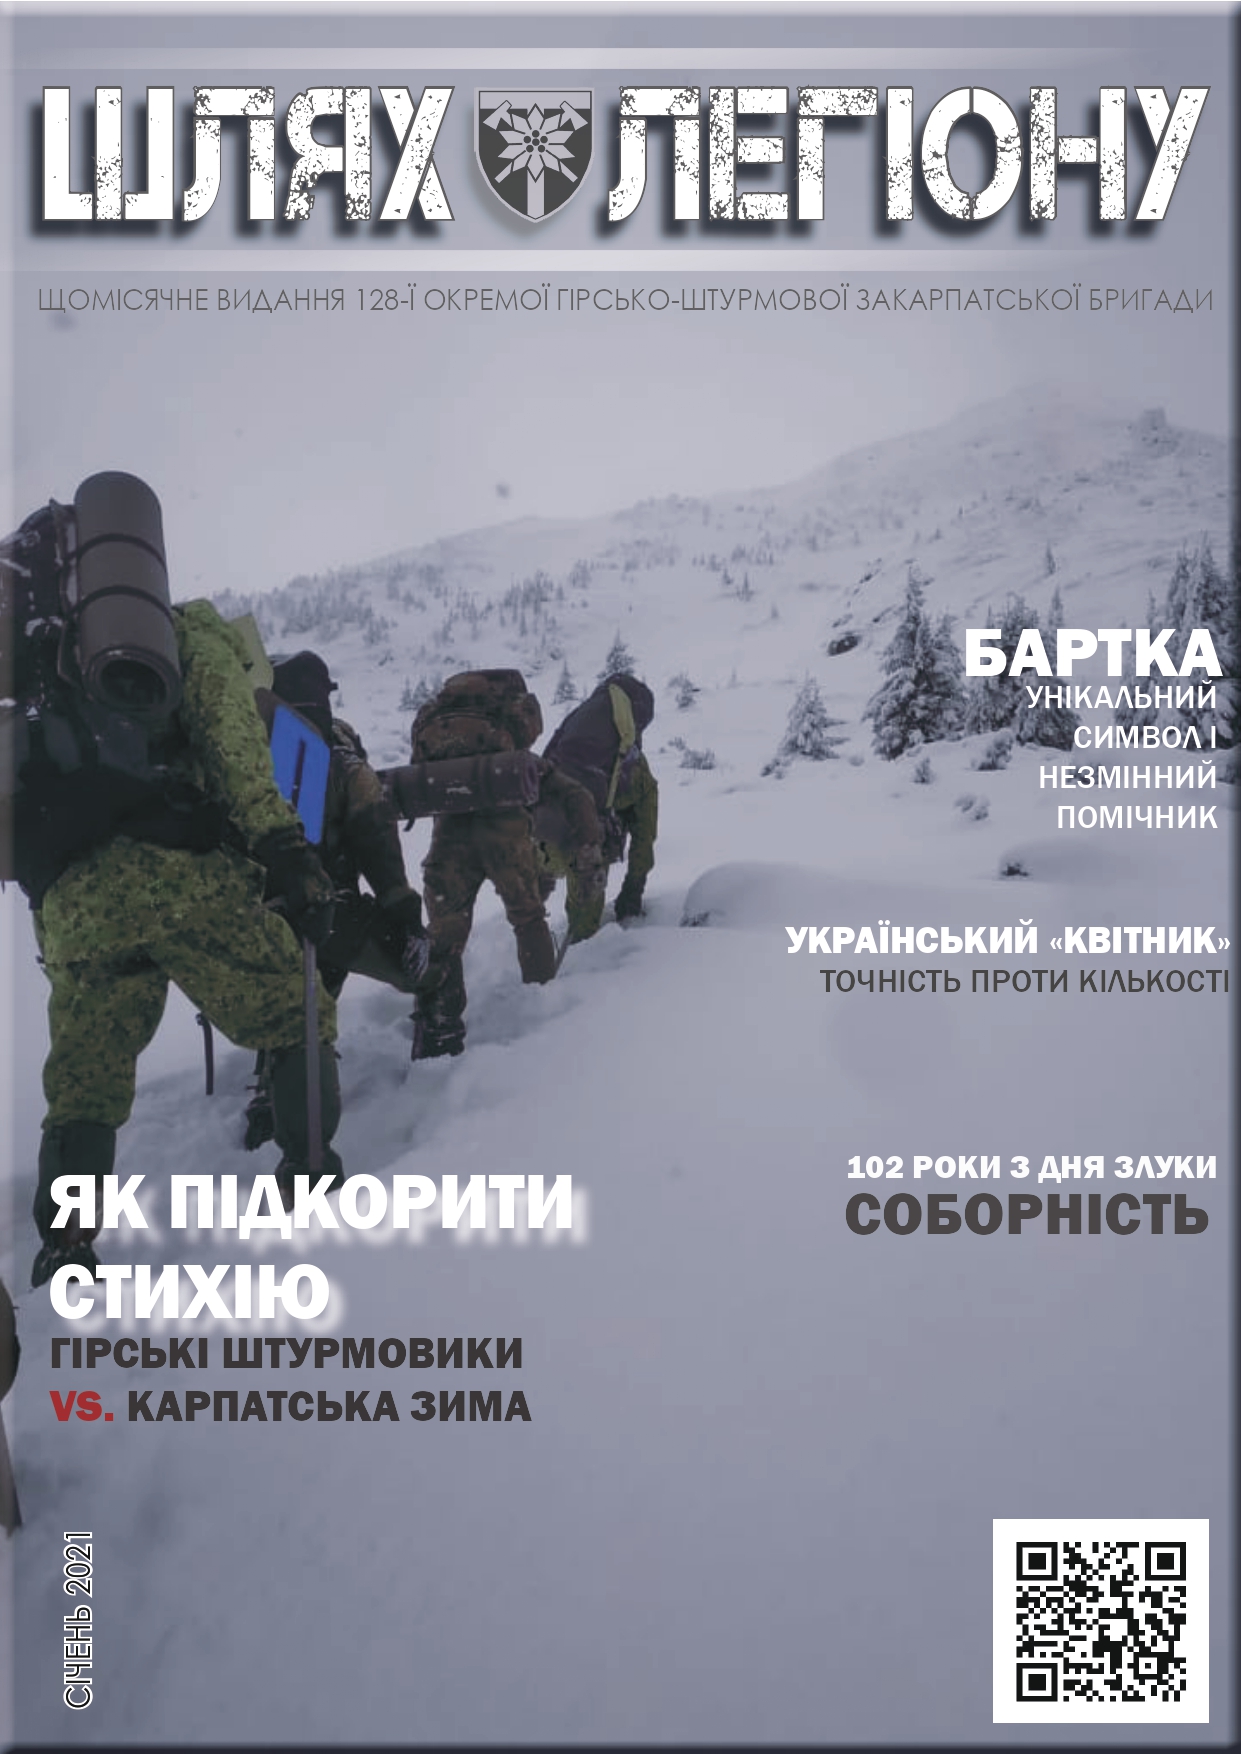 Закарпатська 128-ма бригада відновила видання "бригадної" газети під назвою "Шлях Легіону" (ФОТО)